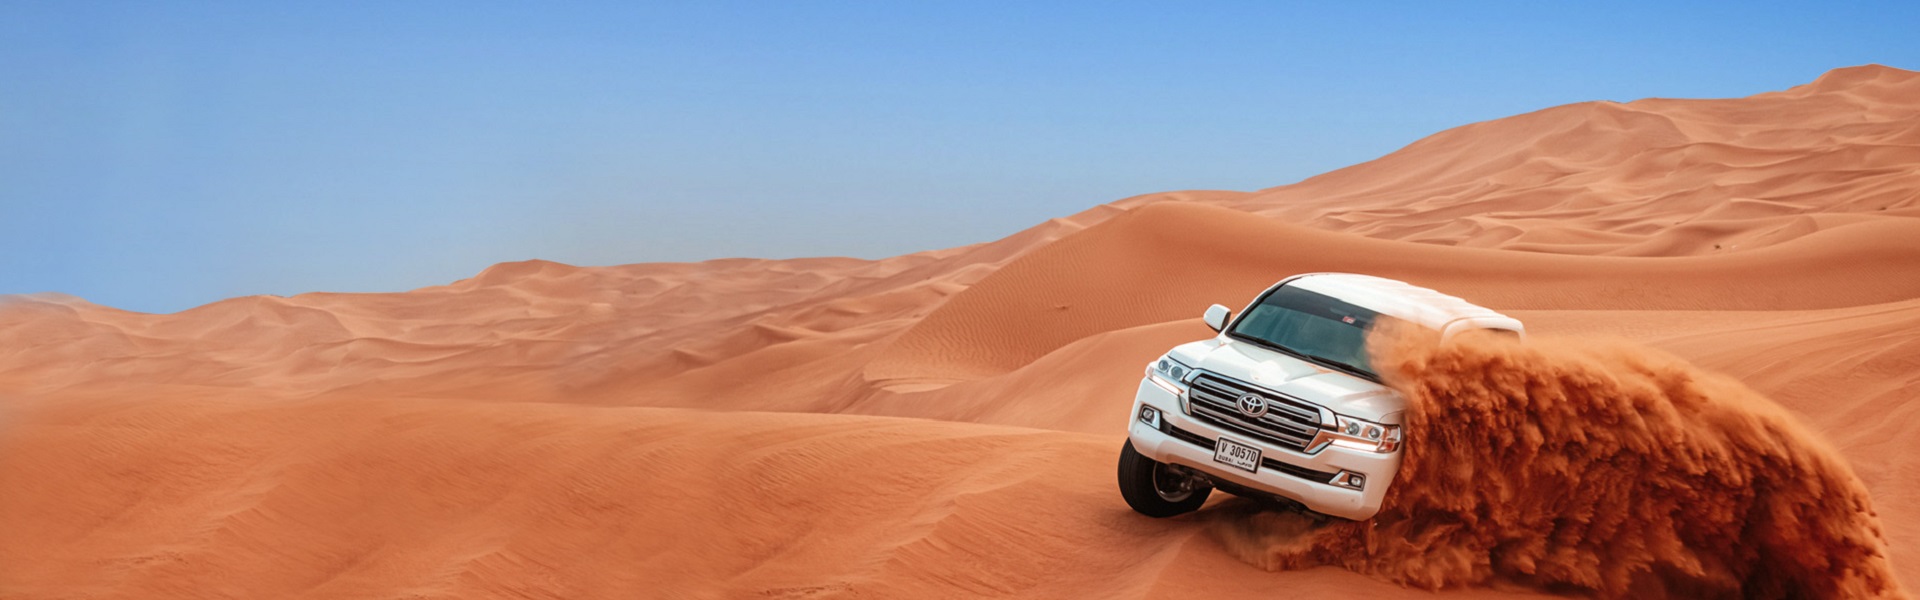 Iznajmljivanje auto dizalice | Desert safari in Dubai